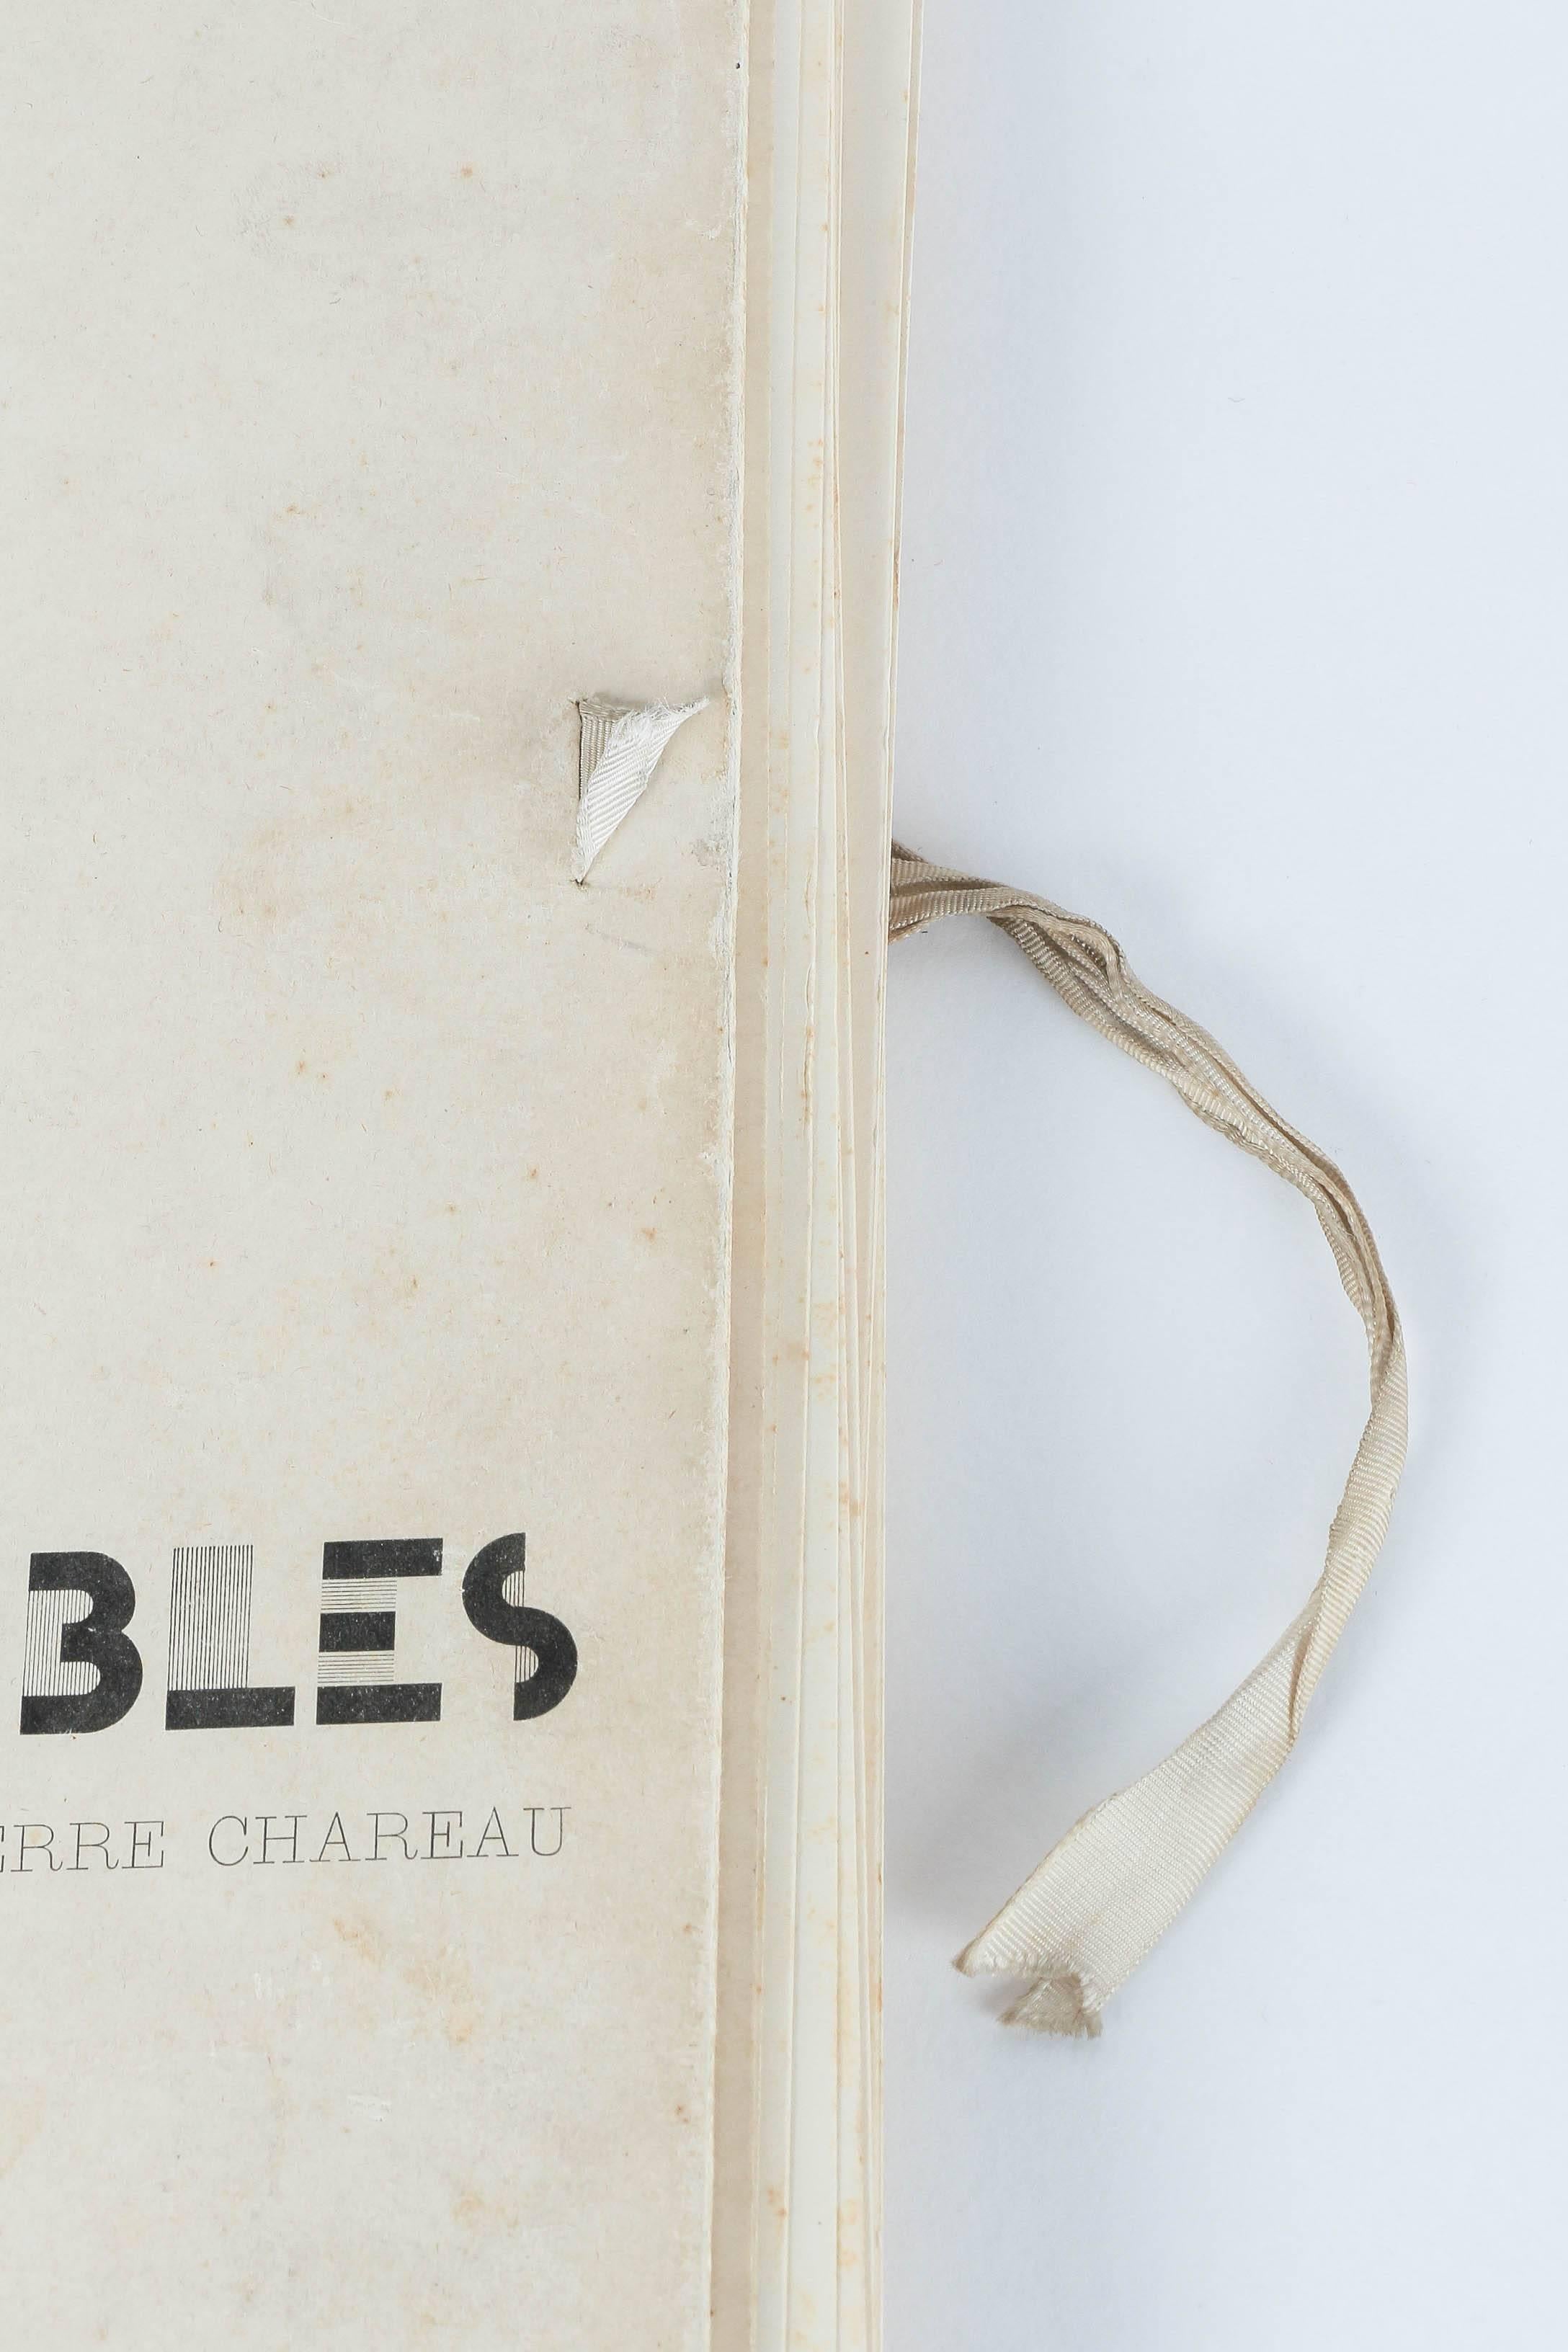 Mid-Century Modern Meubles par Pierre Chareau Book Editions D'Art Charles Moreau, 1928